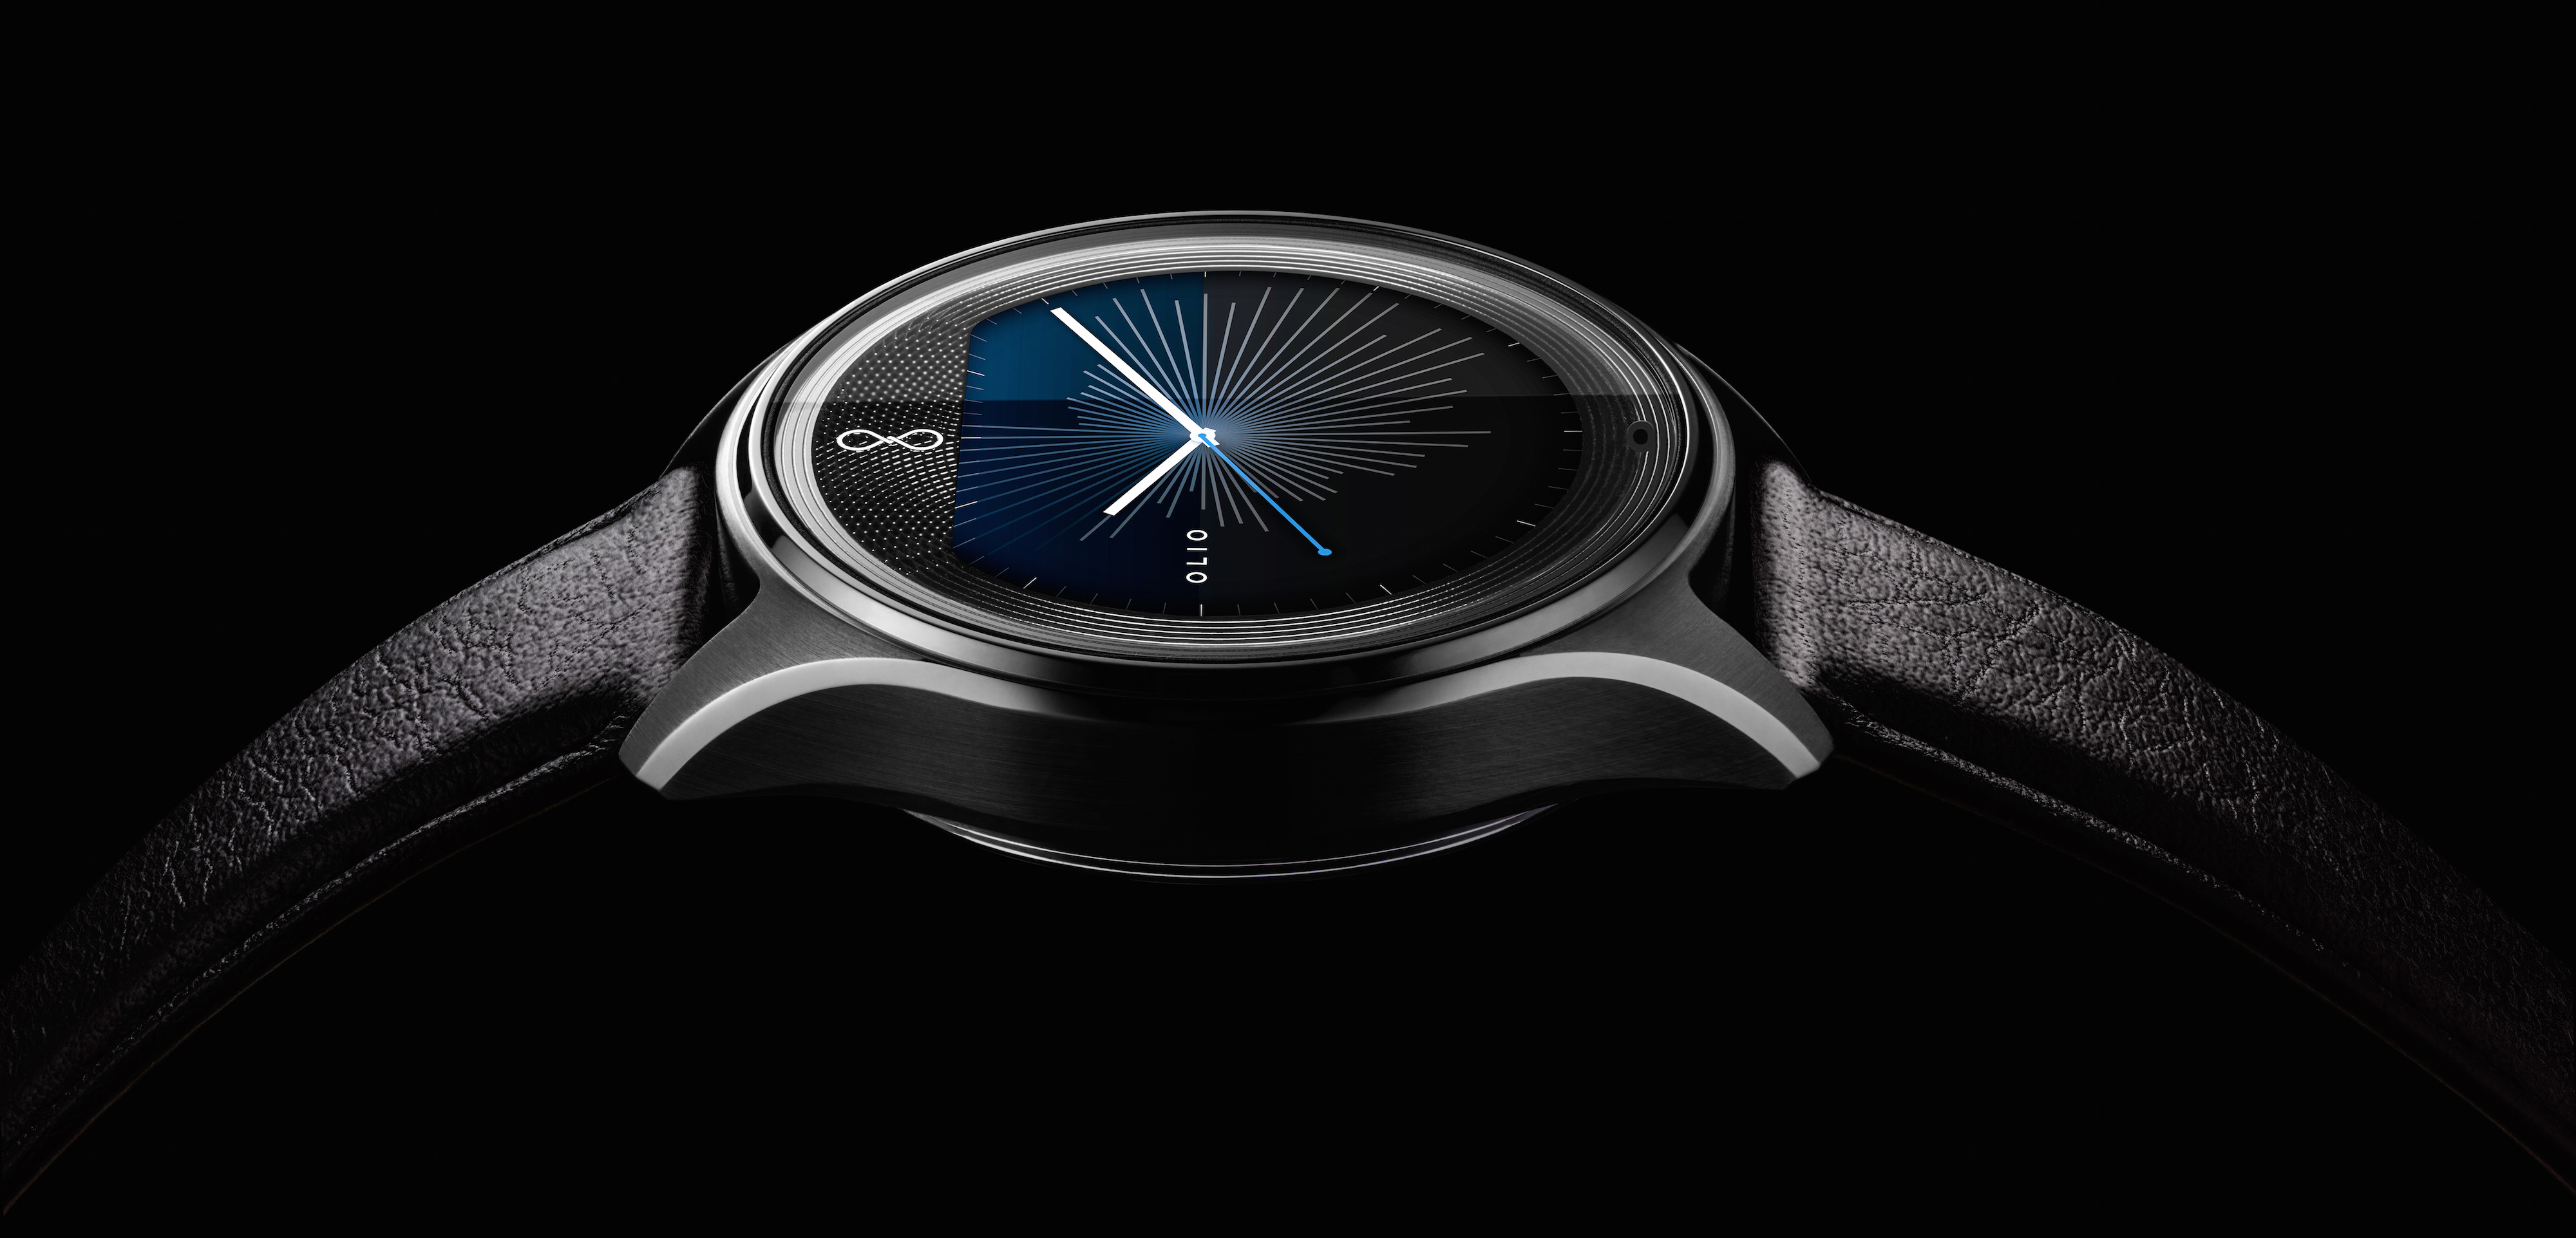 Olio é um smartwatch elegante (e caro) que não rouba seu tempo com notificações